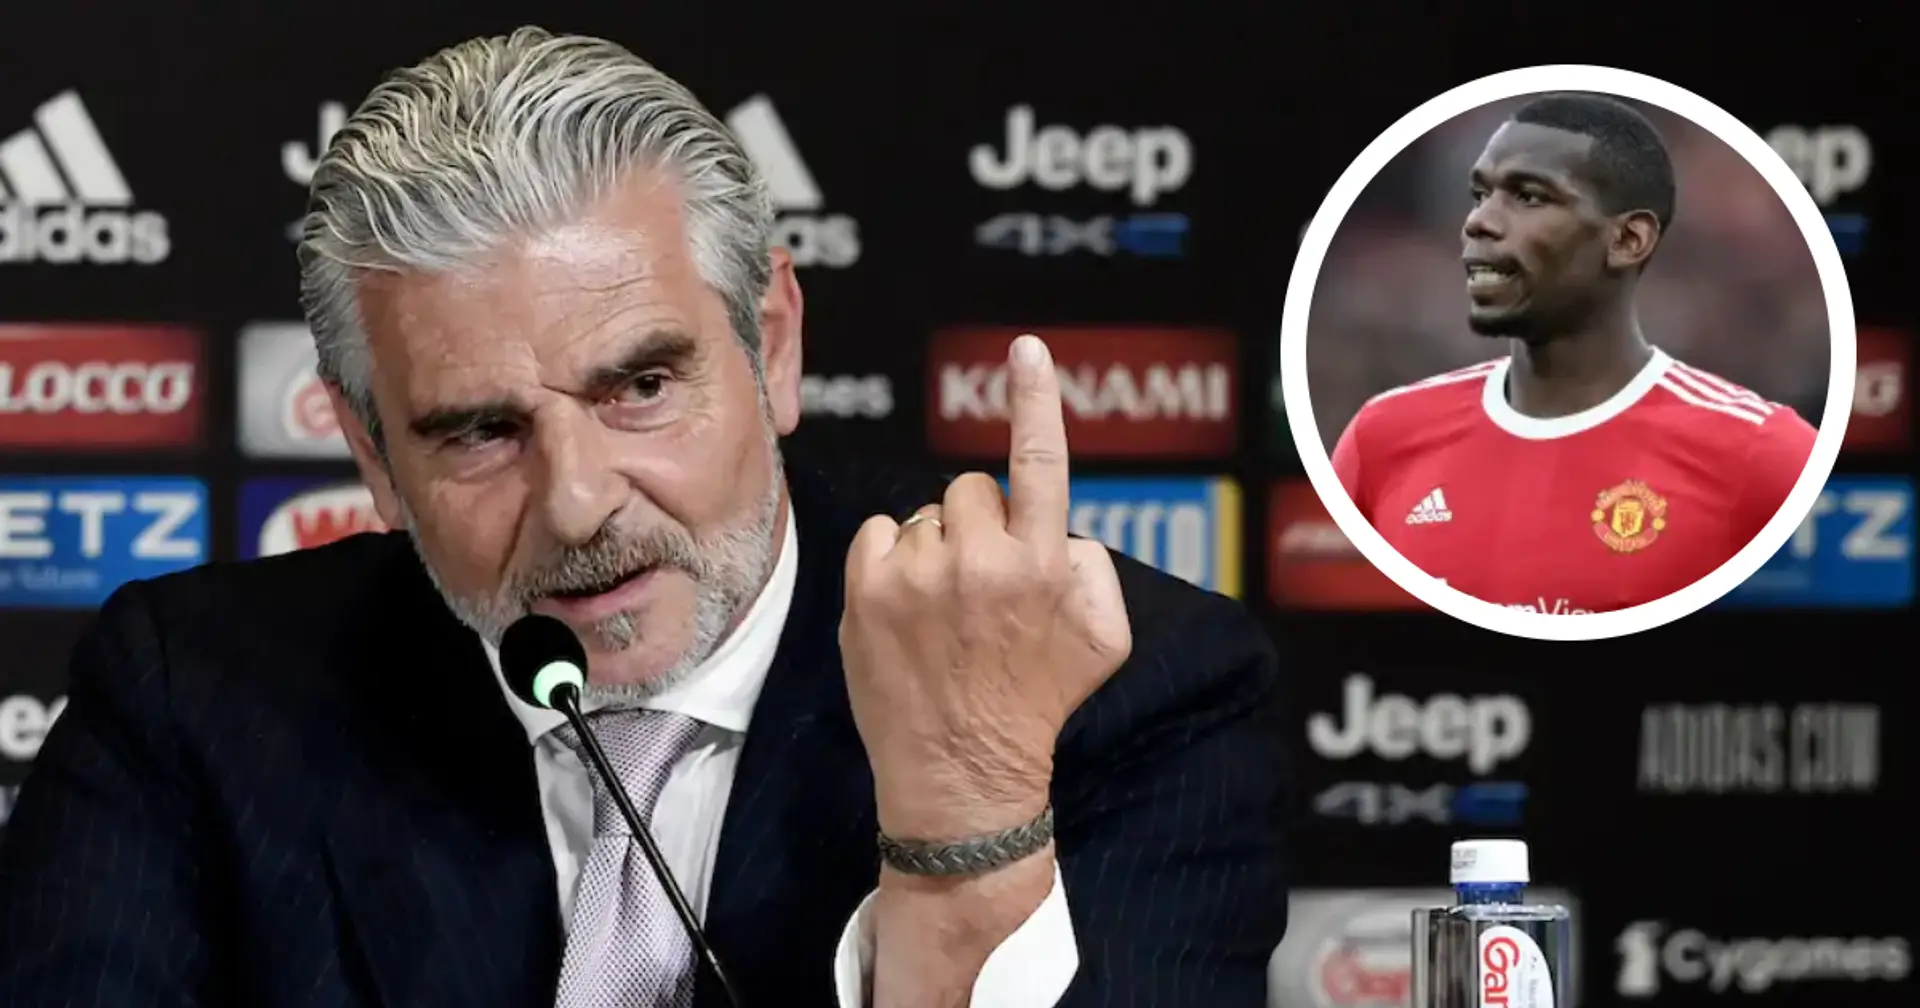 Président de la Juventus: "Si nous voulions parler à Pogba, nous devrons d'abord parler à Man United"